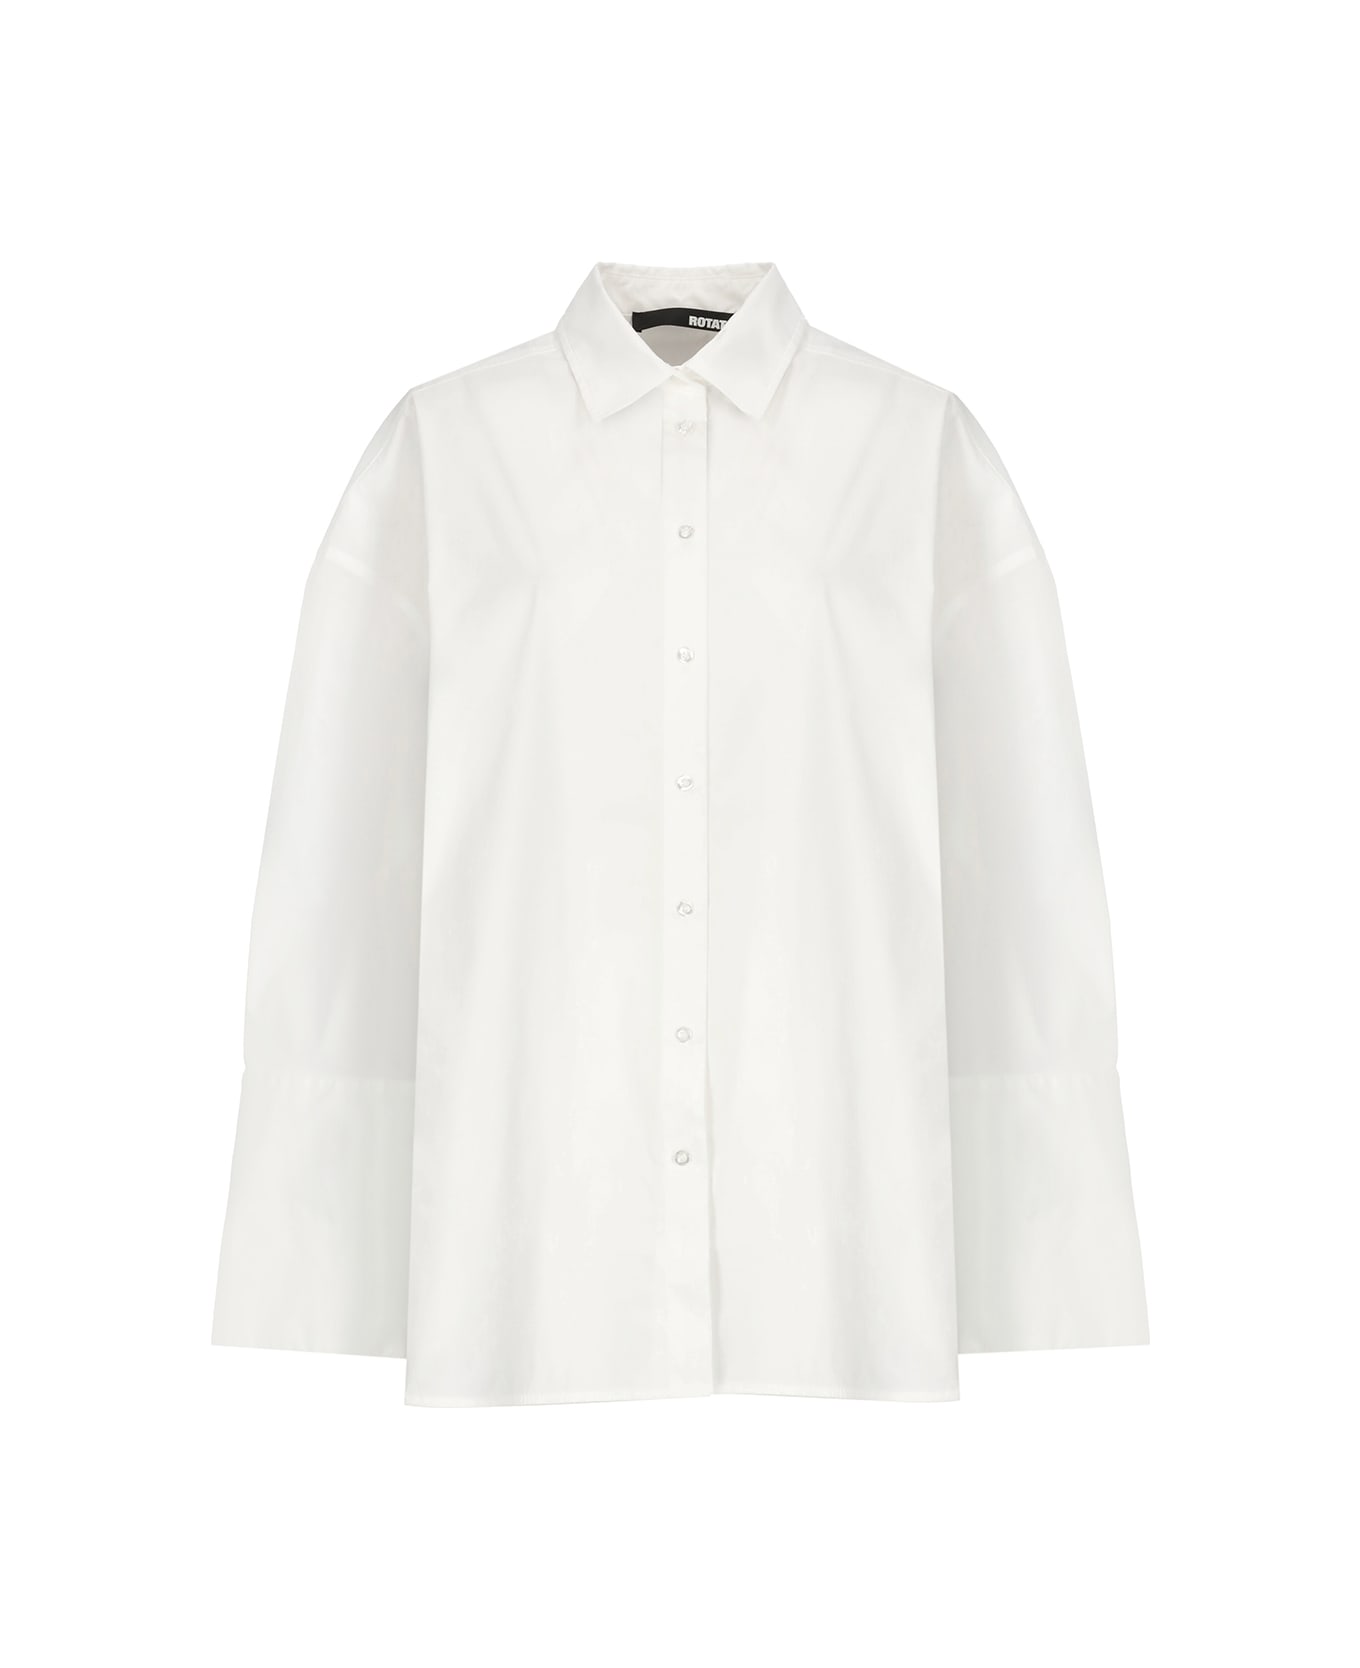 Rotate by Birger Christensen Cotton Shirt - White シャツ